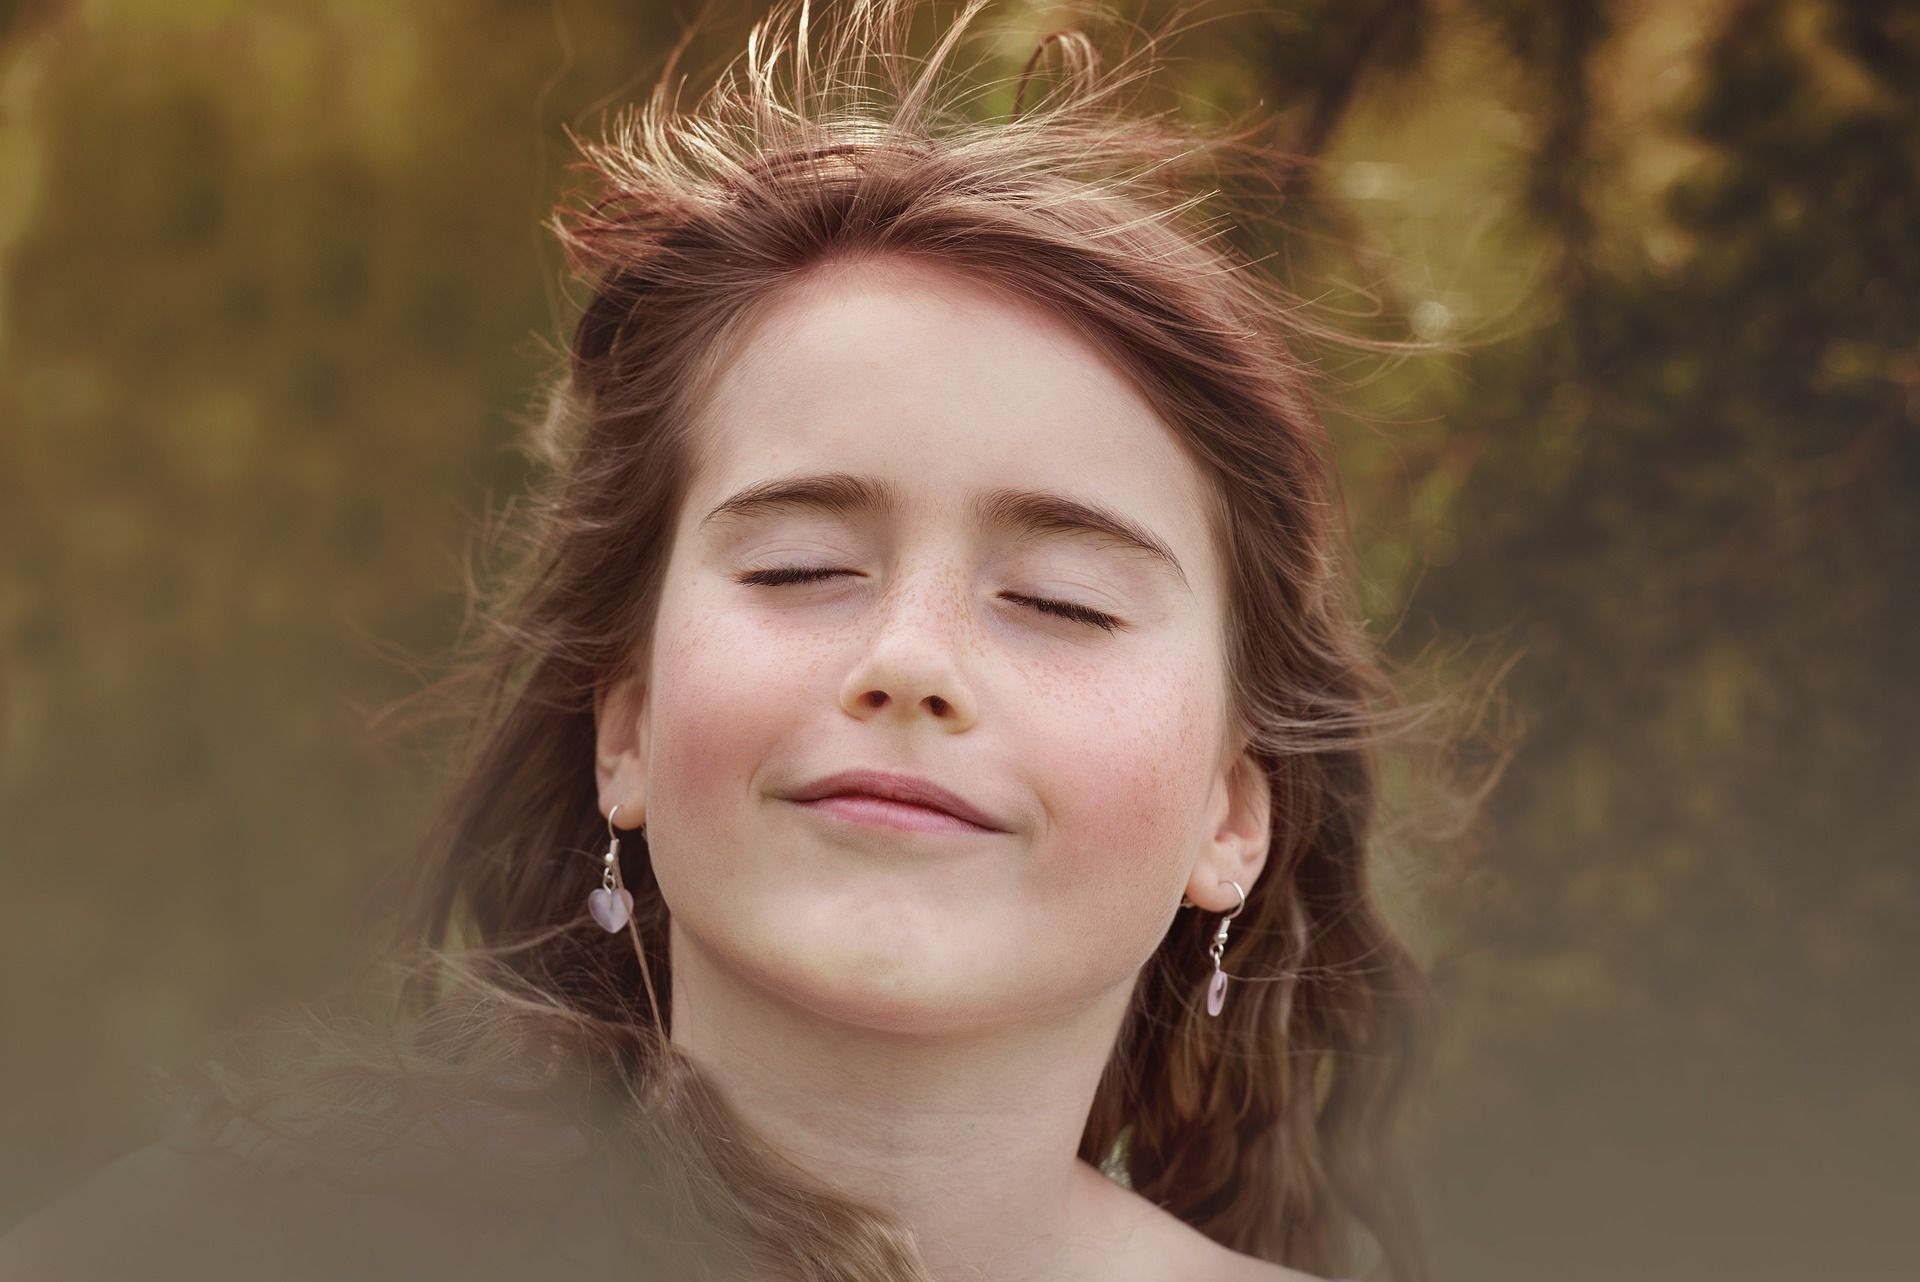 une fille respire avec joie un vent léger - Image par Pezibear de https://pixabay.com/fr/photos/personne-humain-femme-fille-visage-864804/